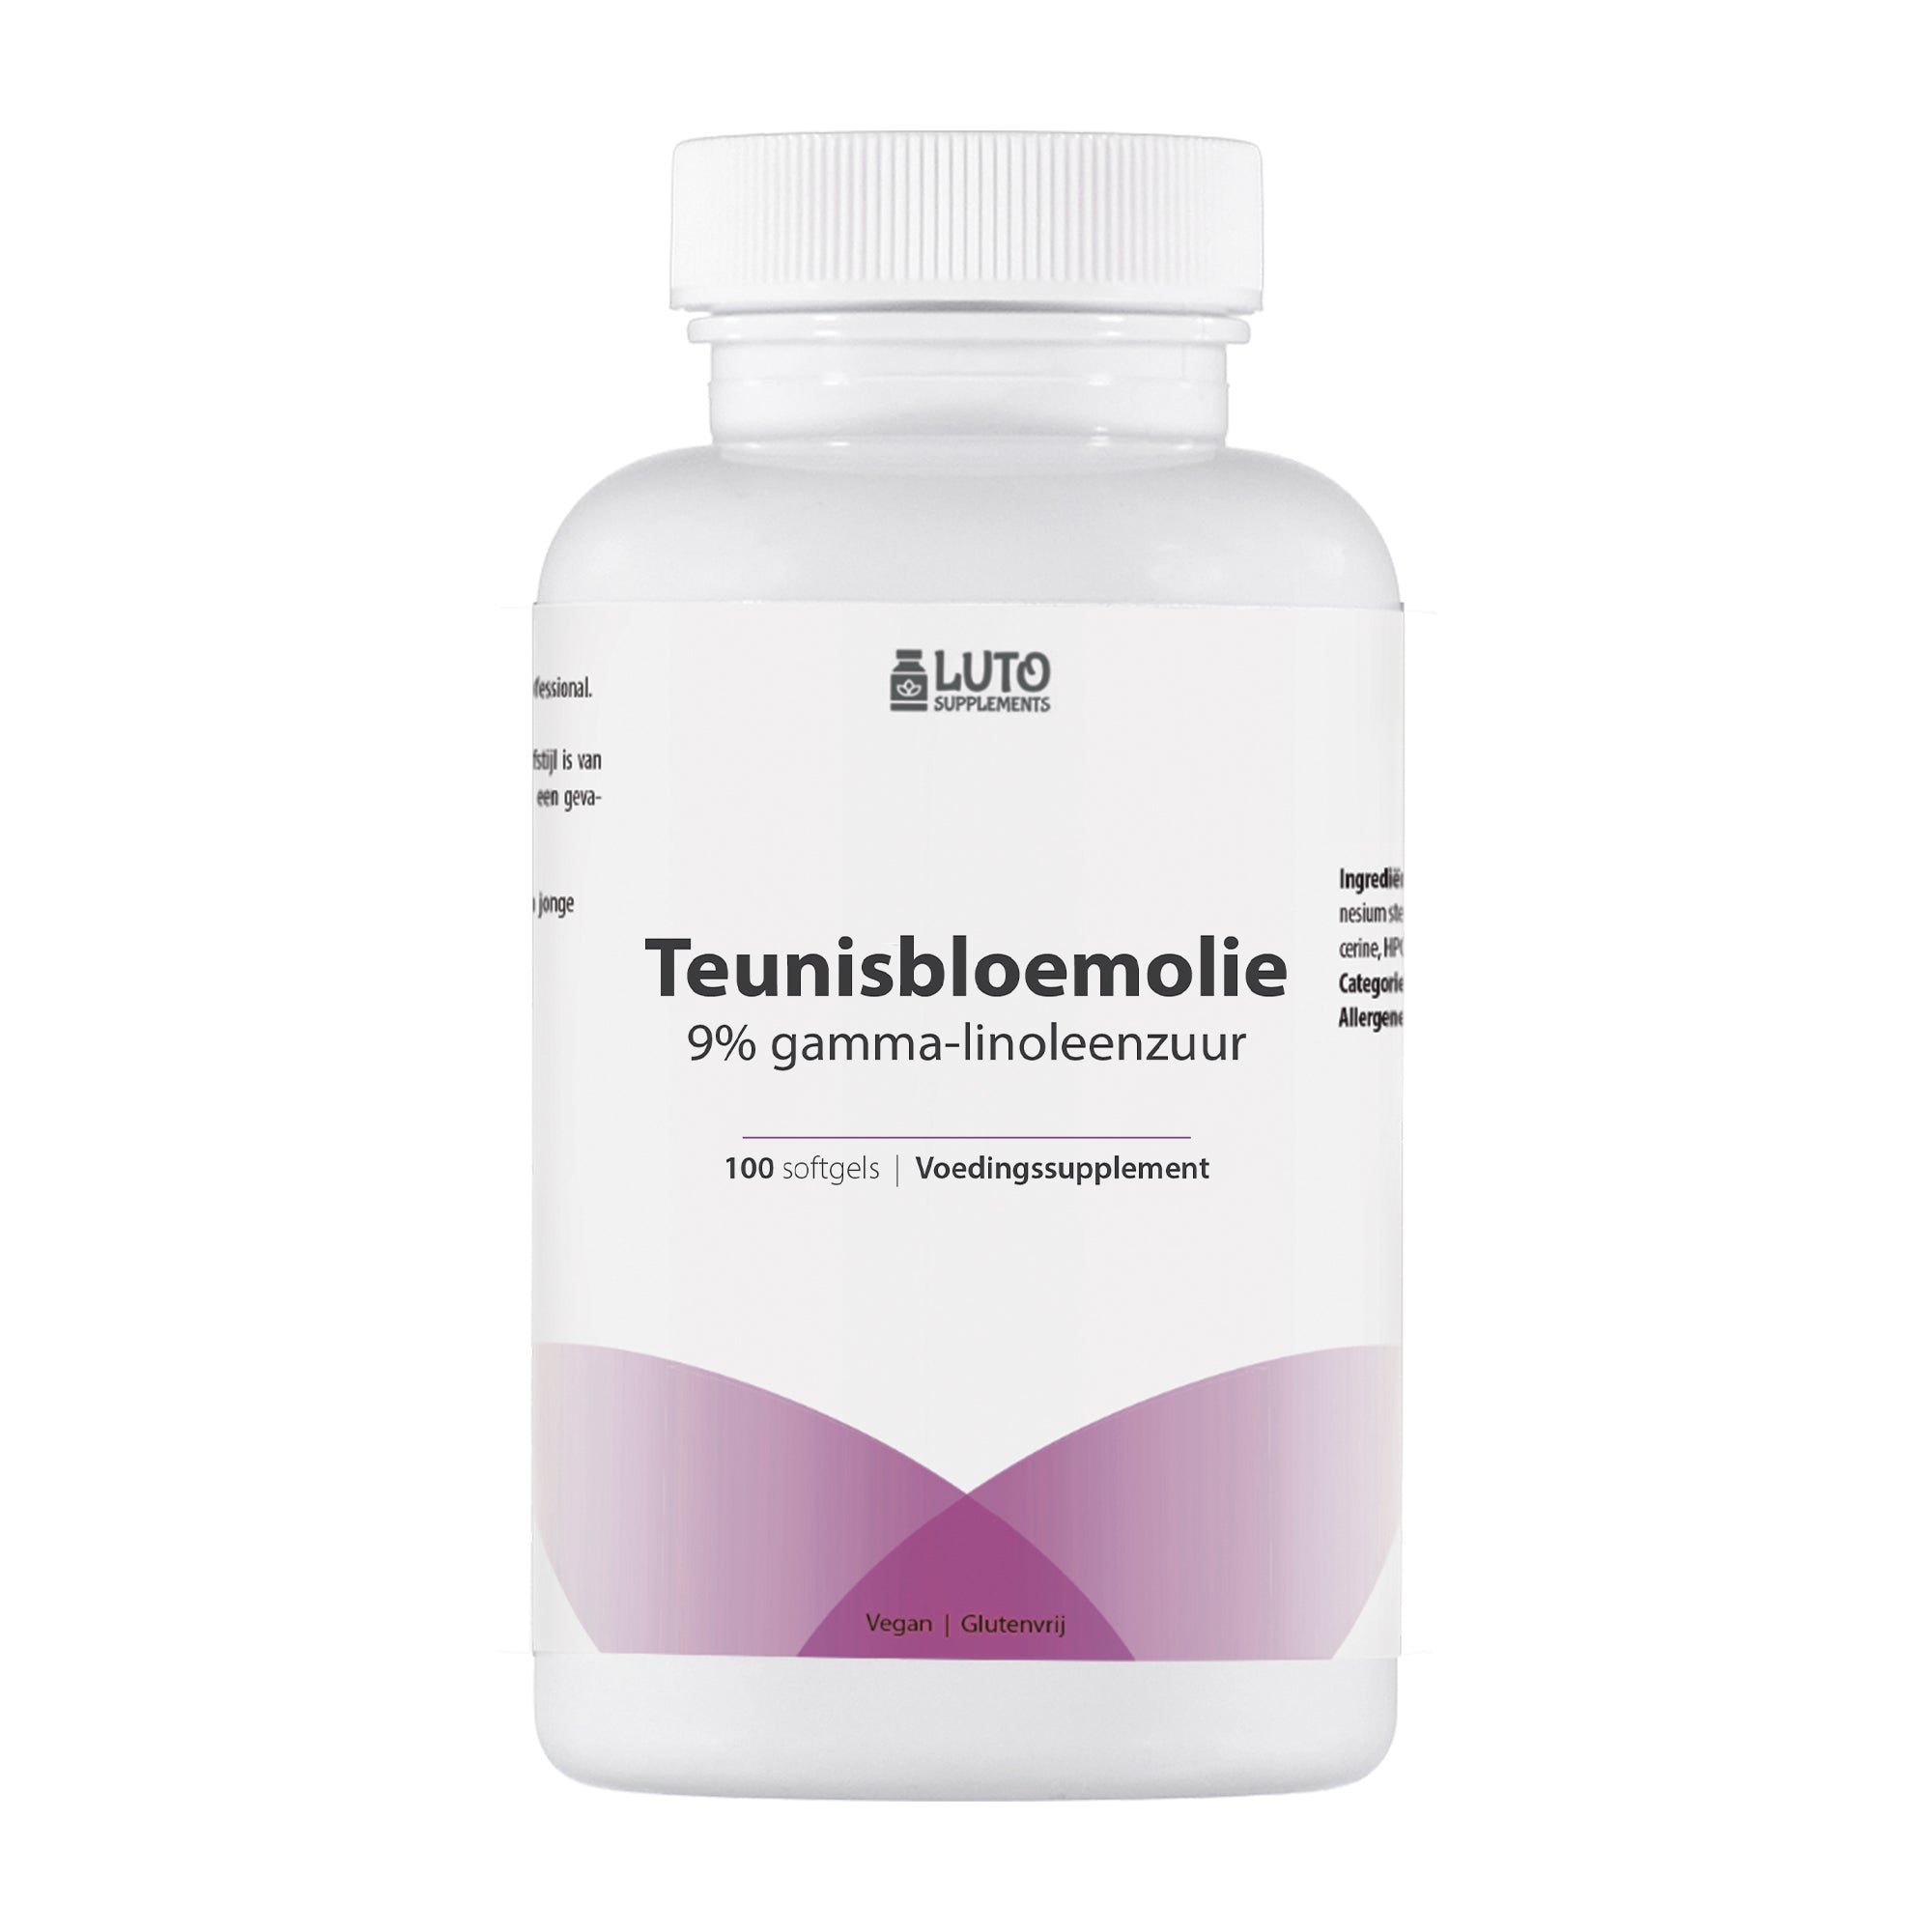 Teunisbloemolie | 1000mg | Premium: 9% gamma-linoleenzuur GLA | 100 softgels | Ondersteunt een normale menstruatie* | Luto Supplements